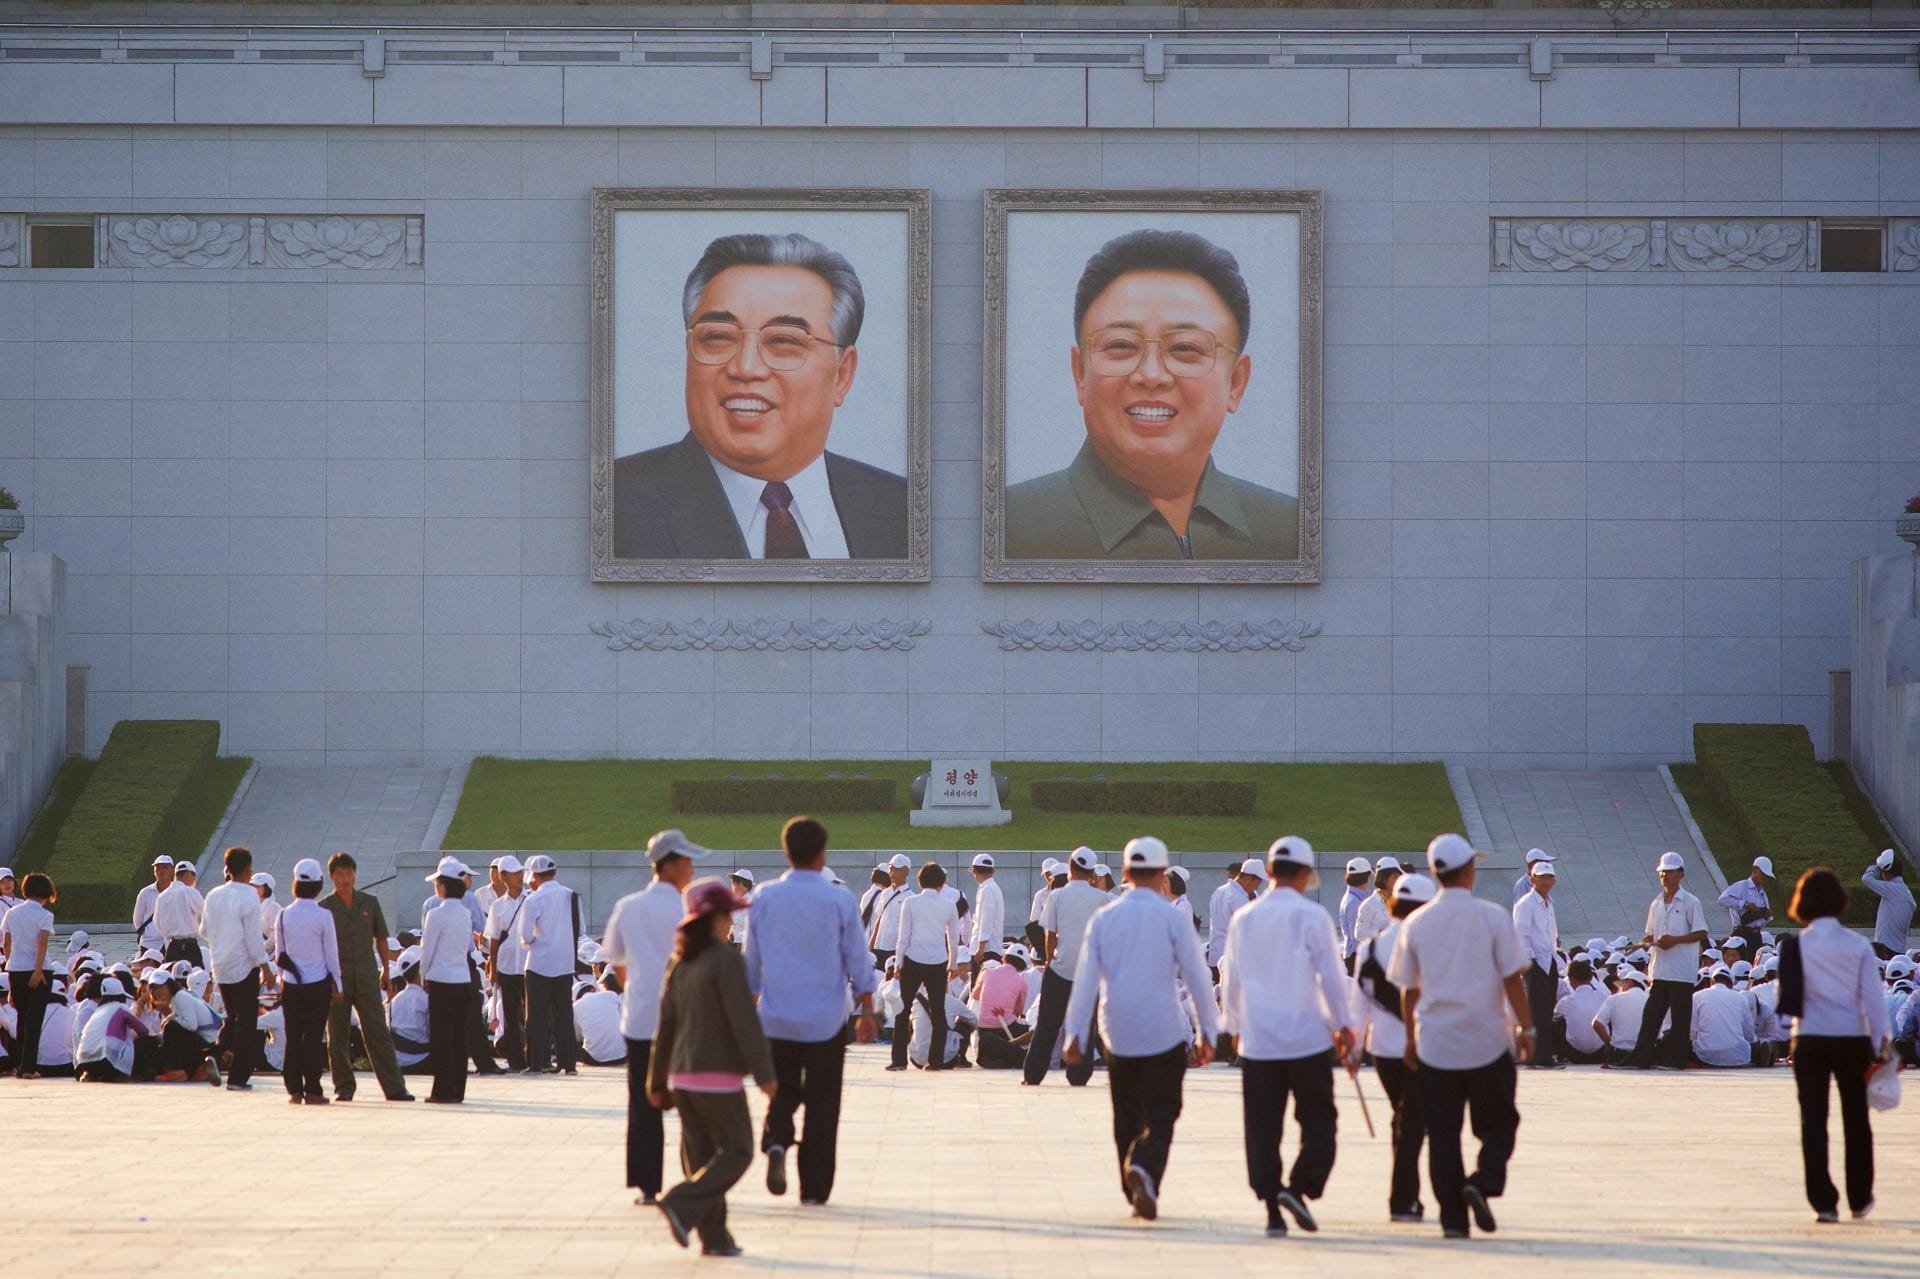 ...während die Besucher der Großen Studienhalle des Volkes in Nordkoreas Hauptstadt Pjöngjang unter ganz anderer Aufsicht stehen.